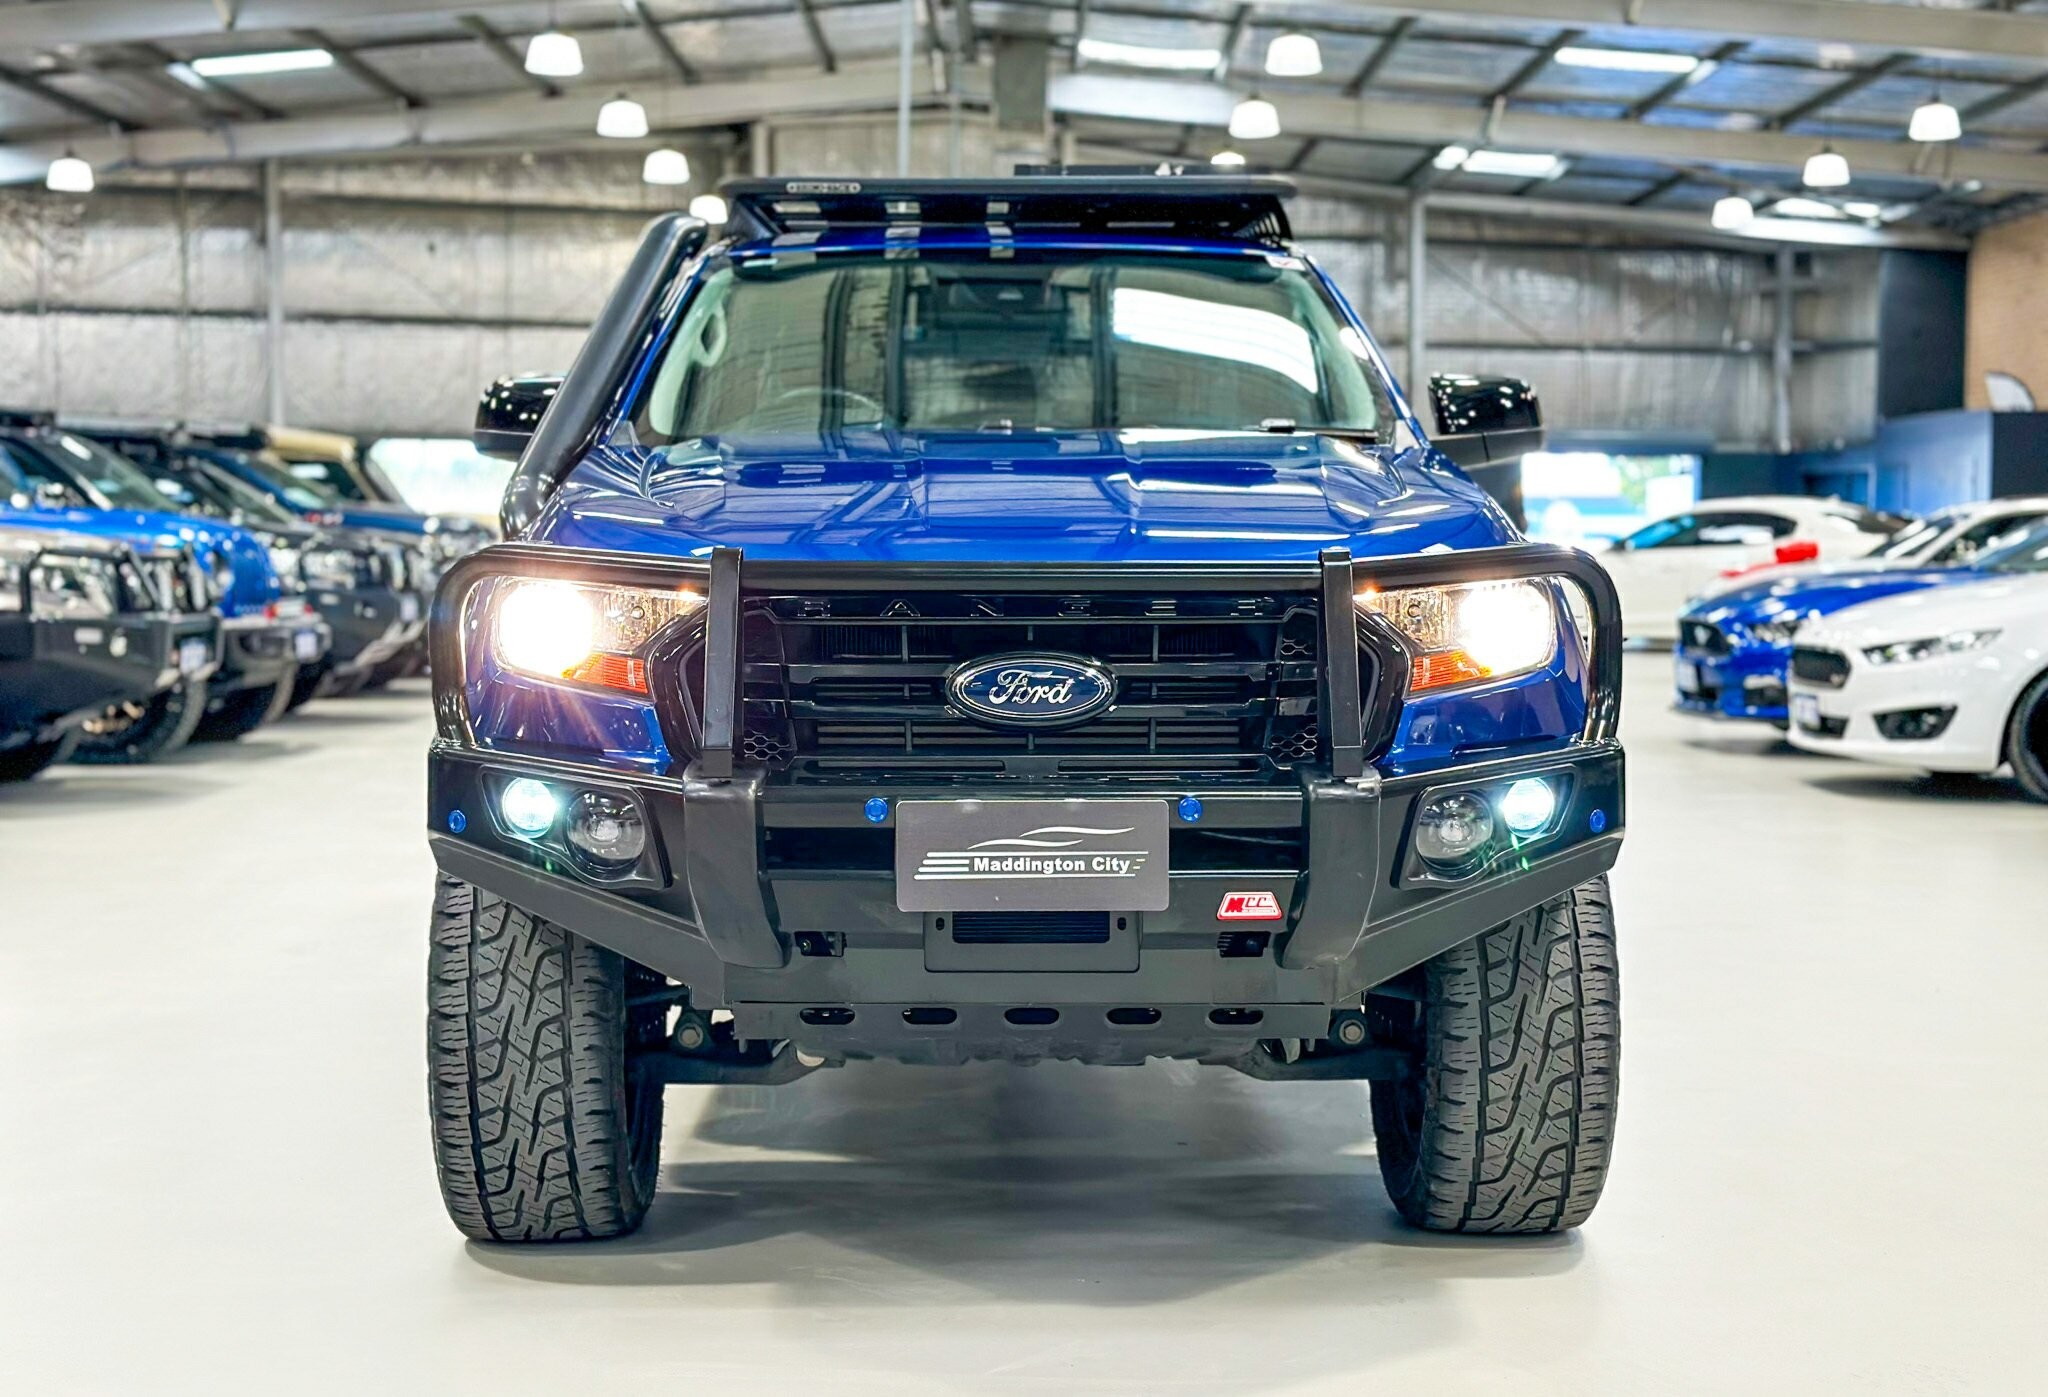 Ford Ranger image 2